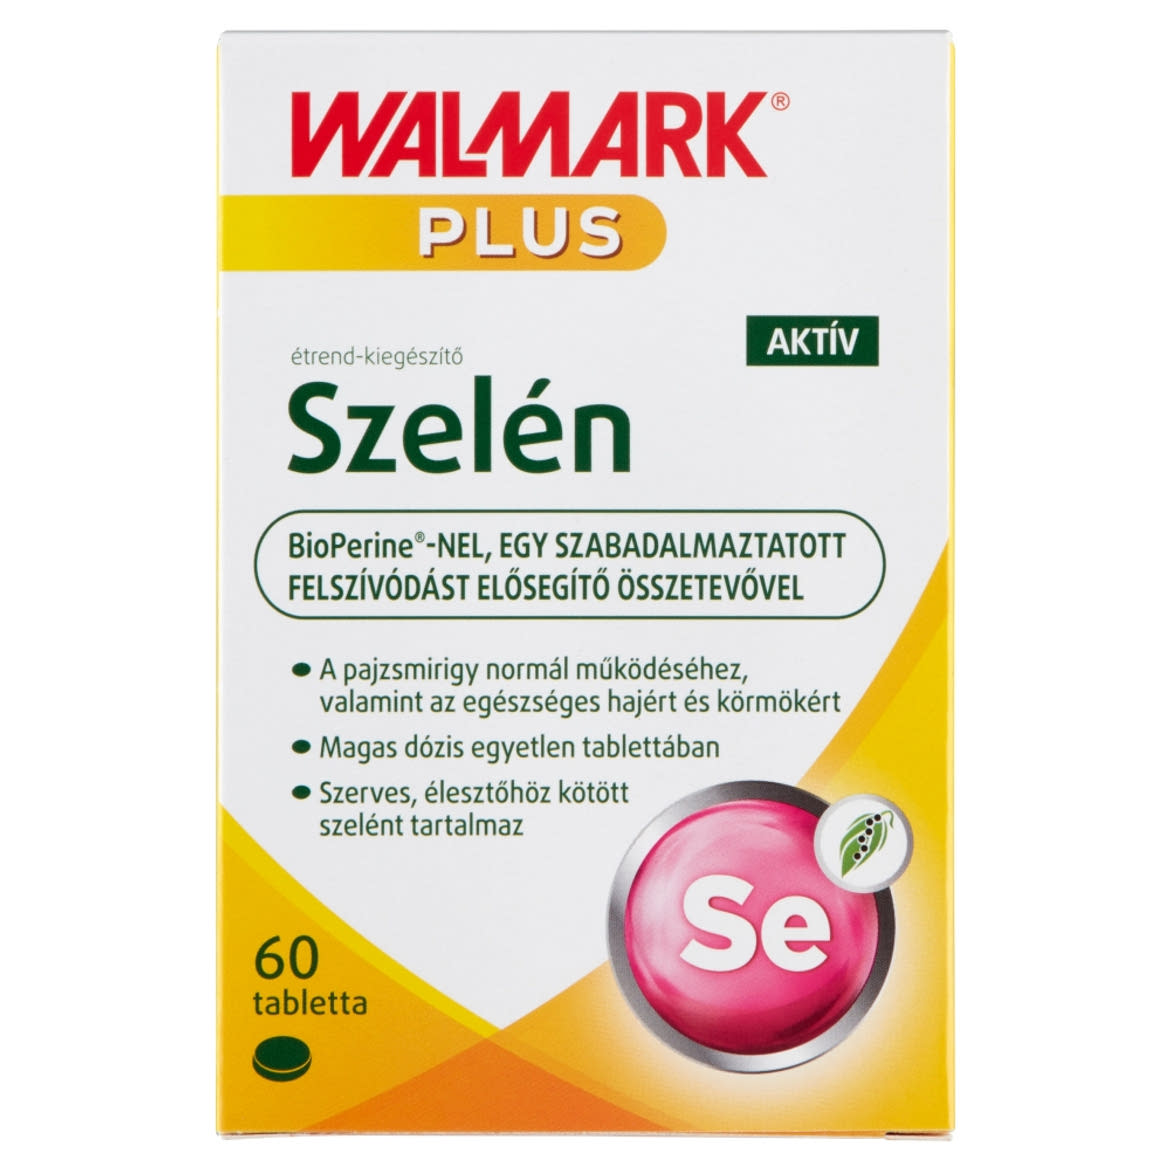 Walmark Szelén Aktív étrend-kiegészítő tabletta